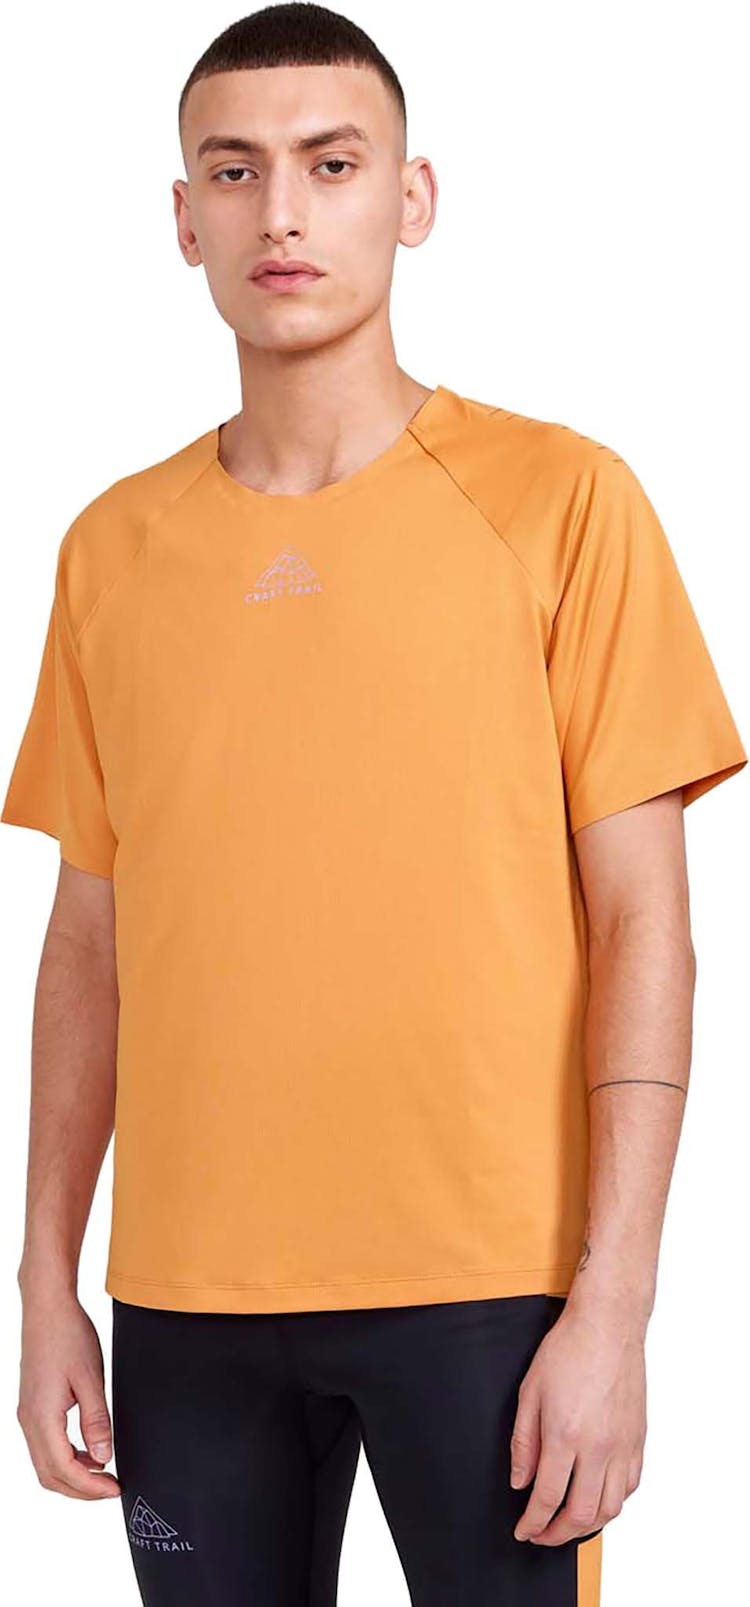 Numéro de l'image de la galerie de produits 3 pour le produit T-shirt à manches courtes Pro Trail - Homme